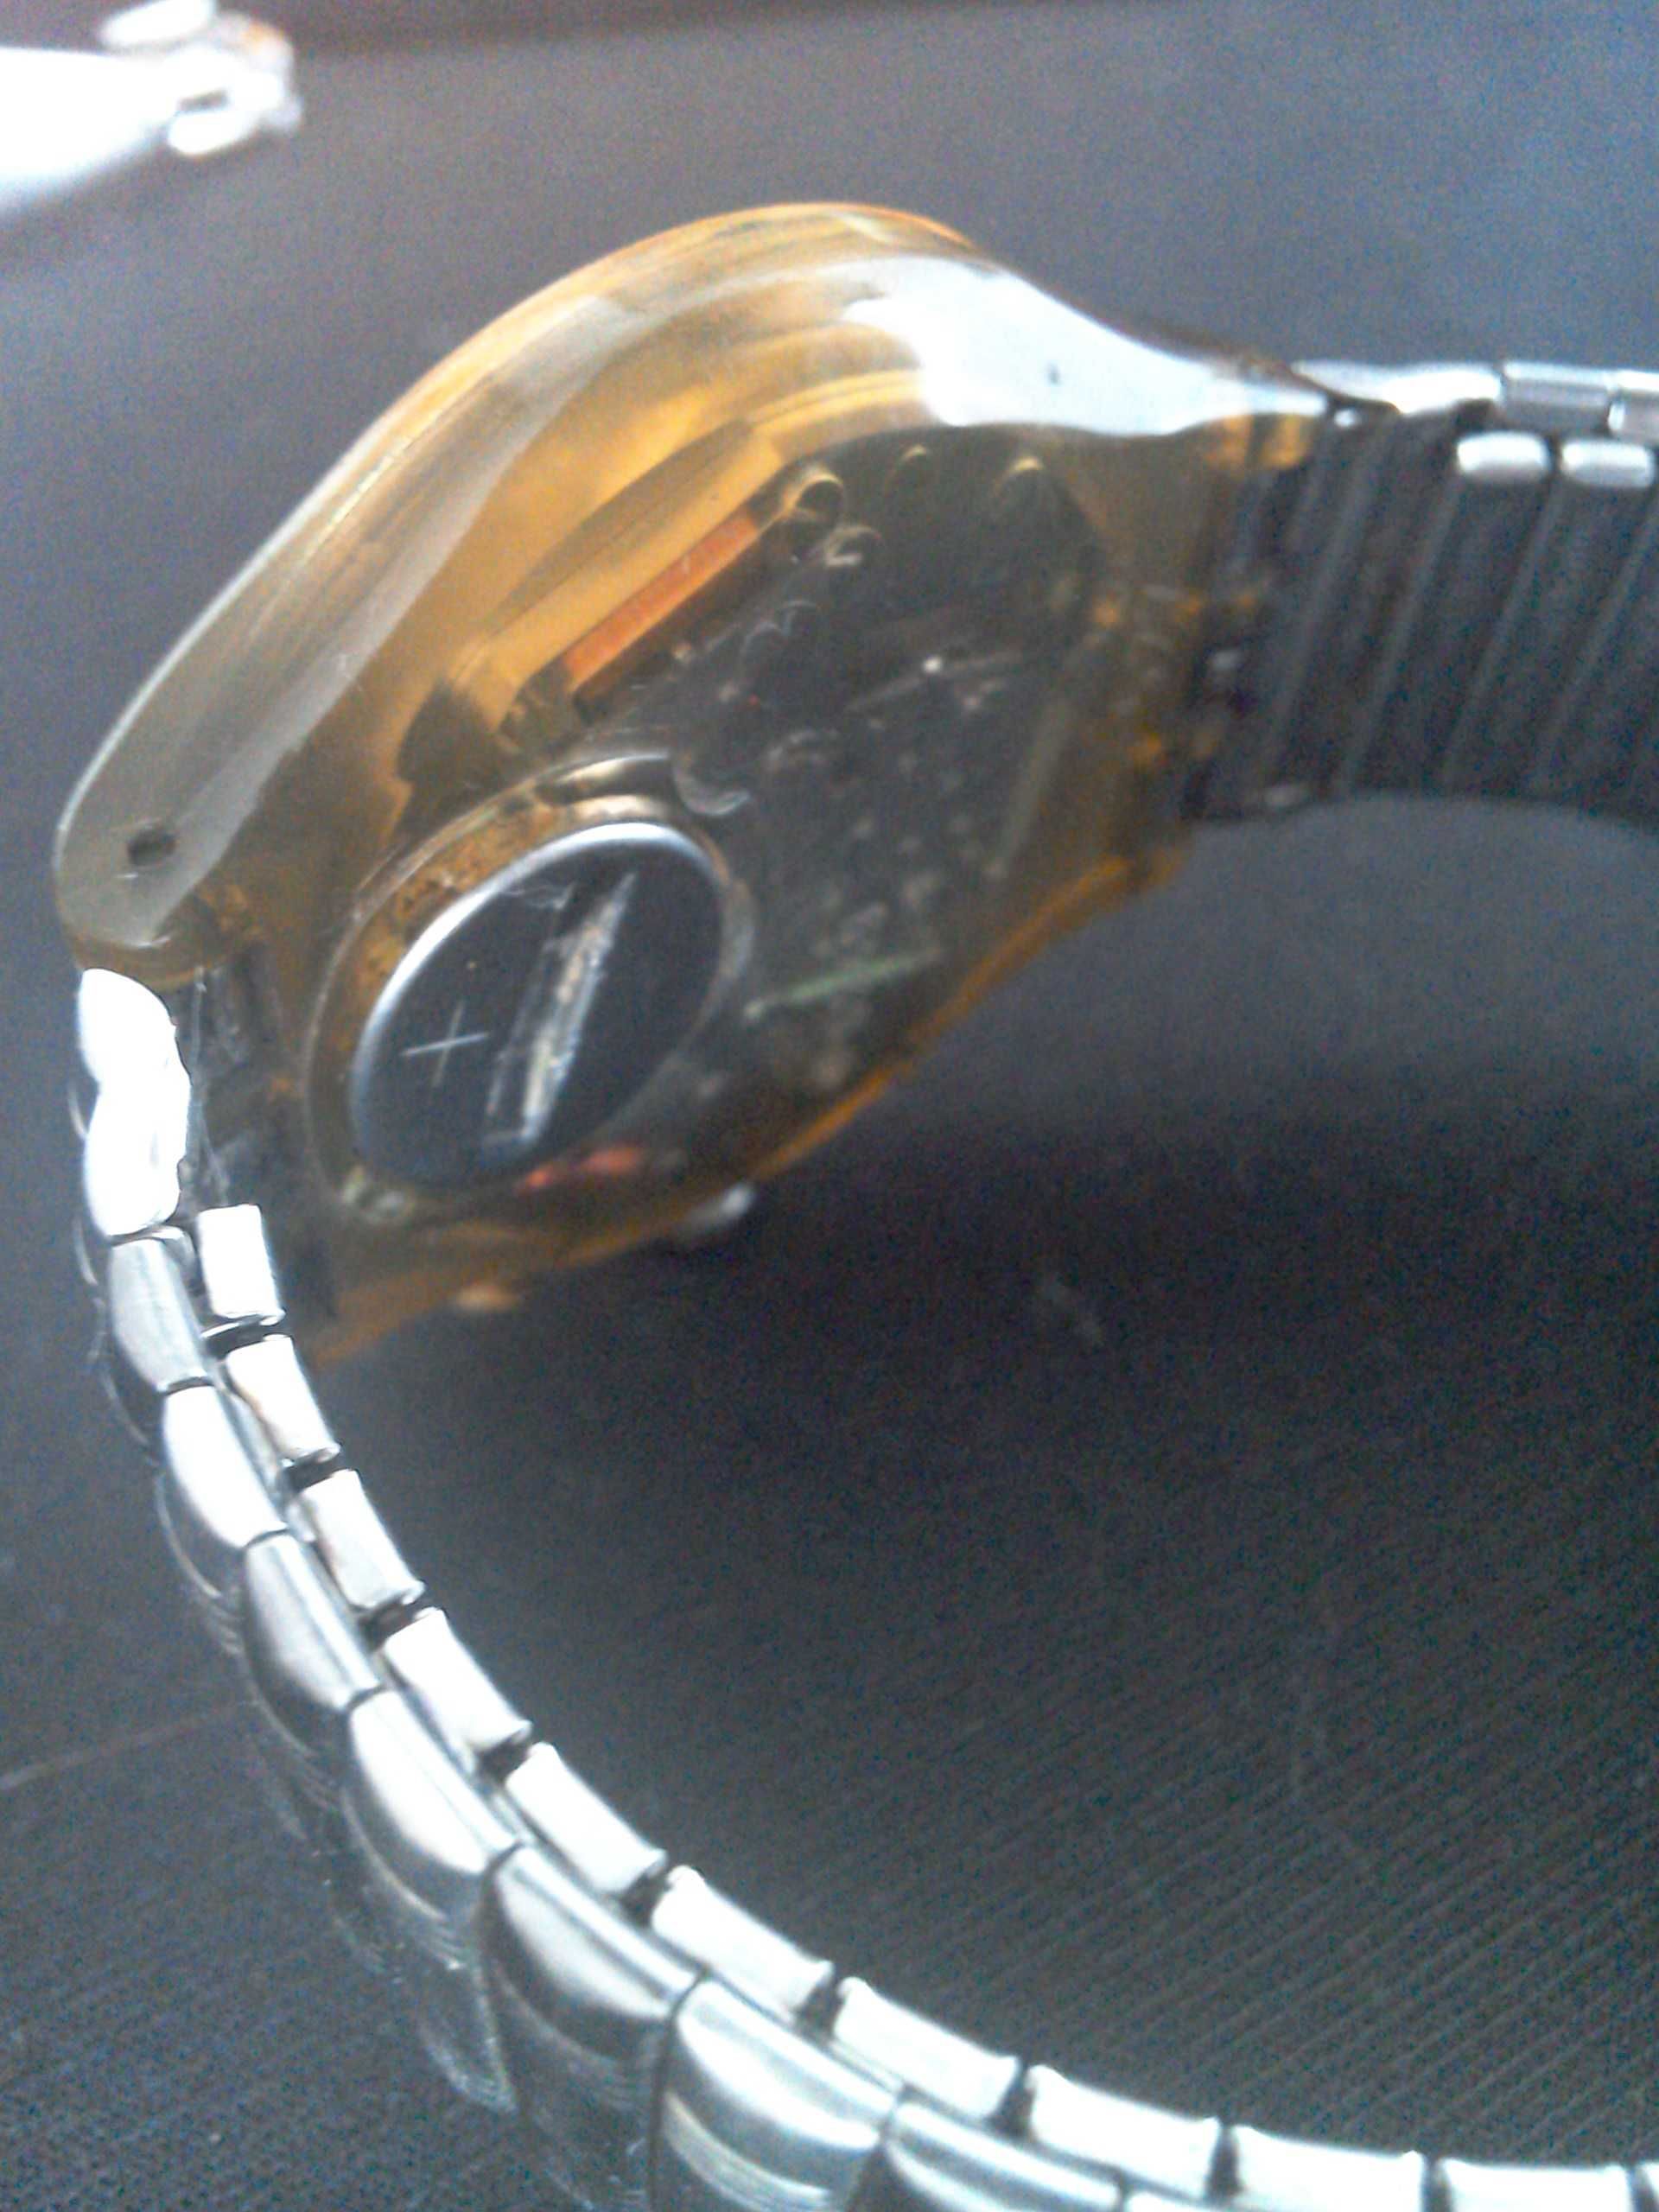 Ceas cronograf Swatch   Mecanism Elveţian, 22 rubine, quartz 37mmdiam.